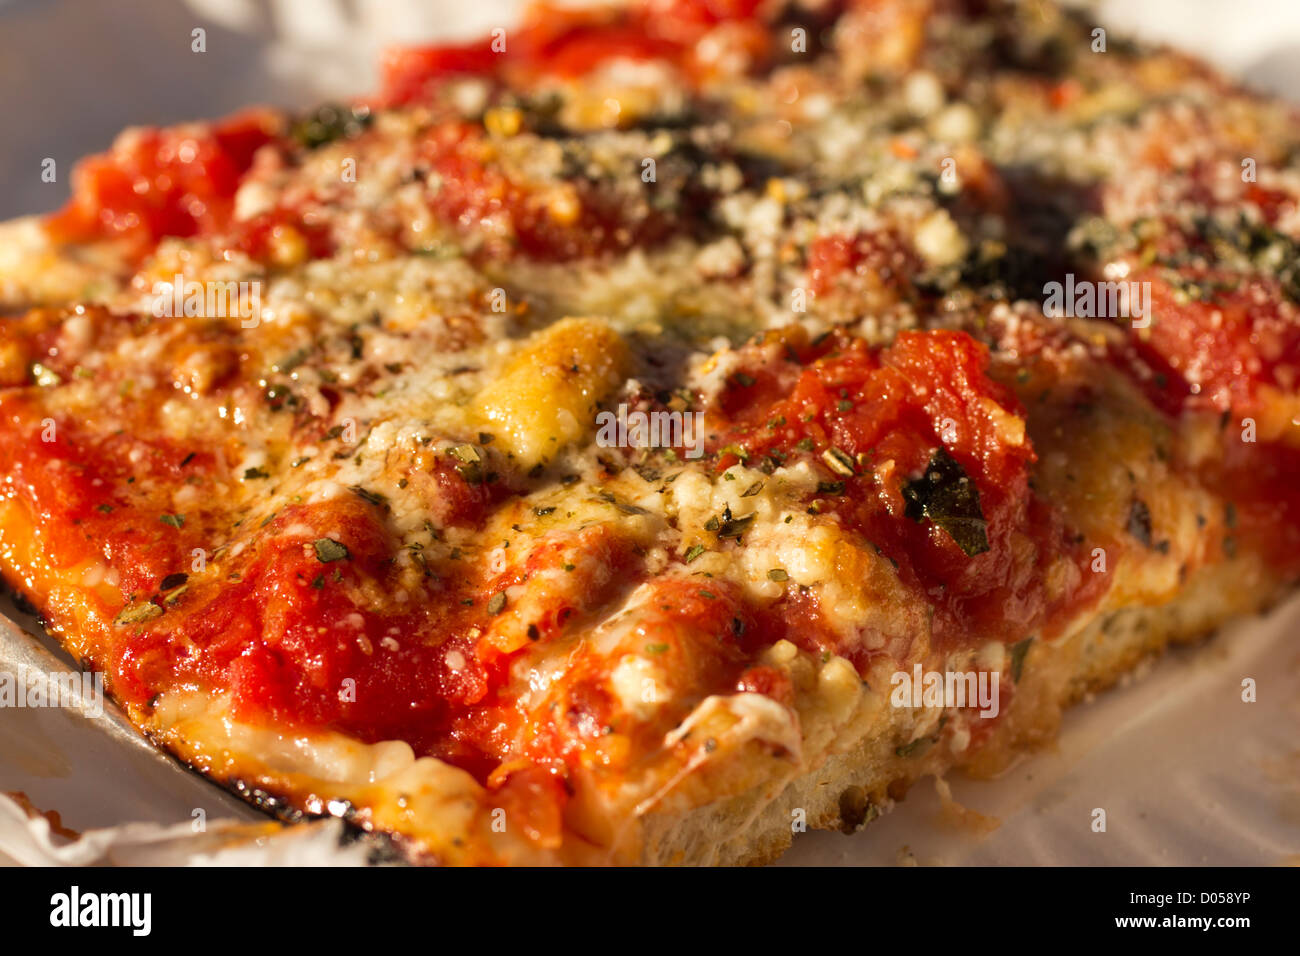 Sfincione: a pizza siciliana tradicional de Palermo e Bagheria in